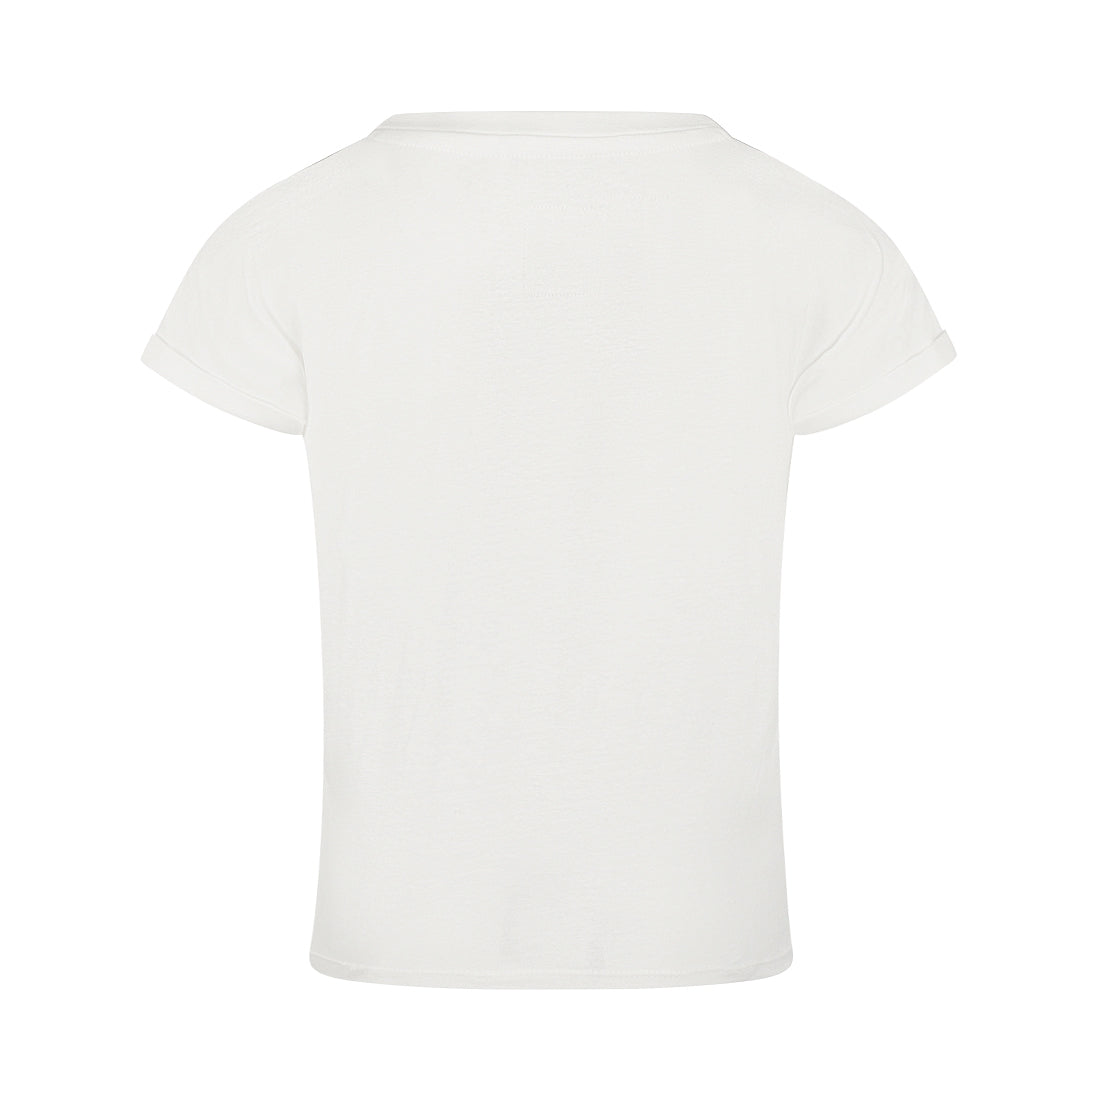 Meisjes T-shirt ss van Koko Noko in de kleur  Off white in maat 128.